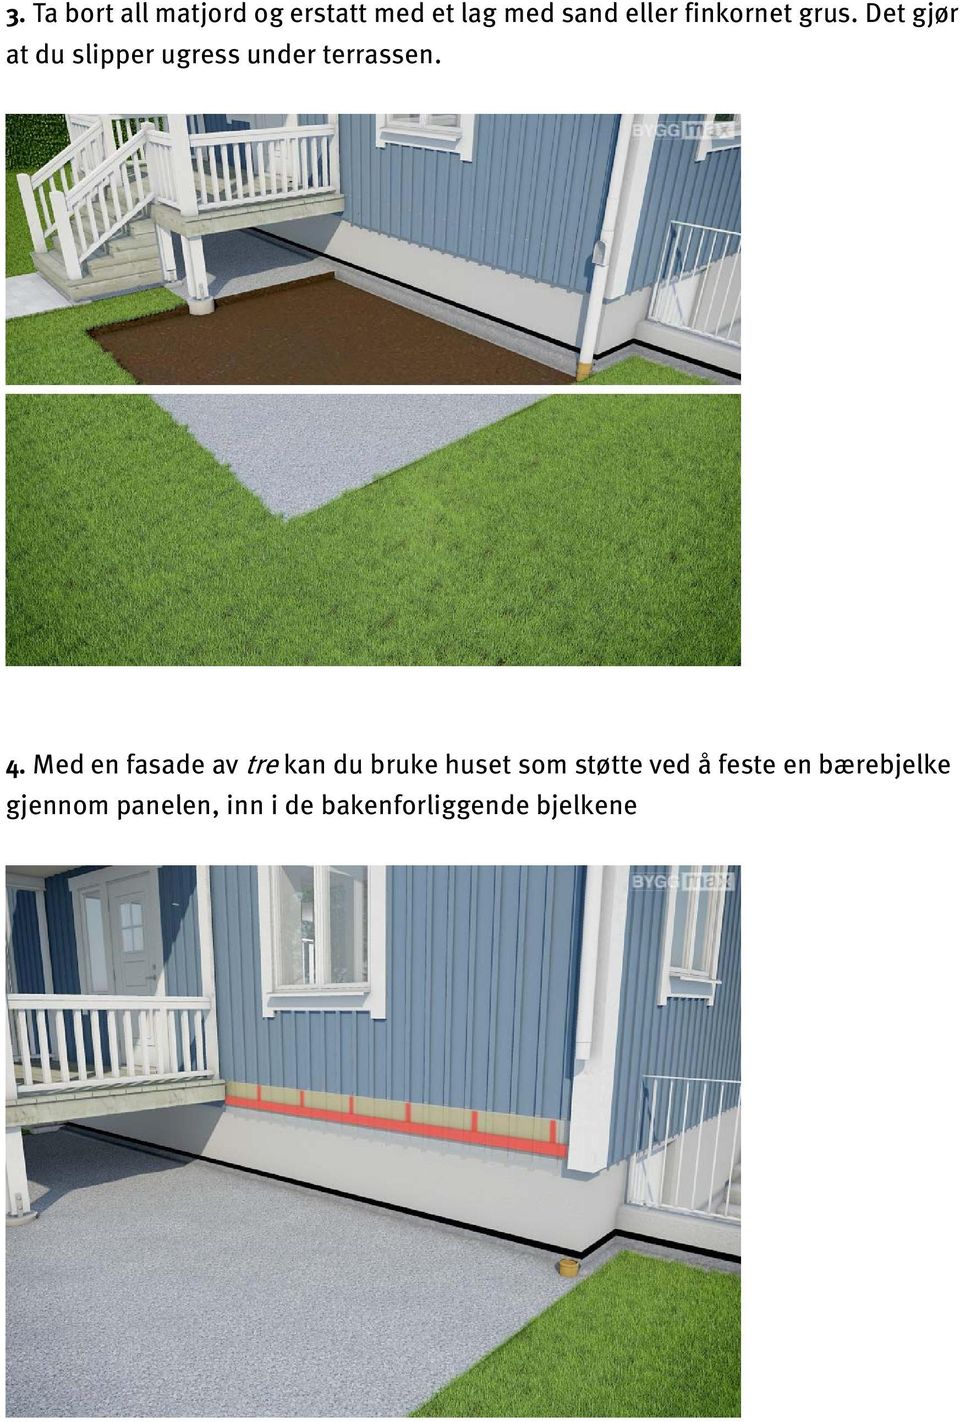 4. Med en fasade av tre kan du bruke huset som støtte ved å